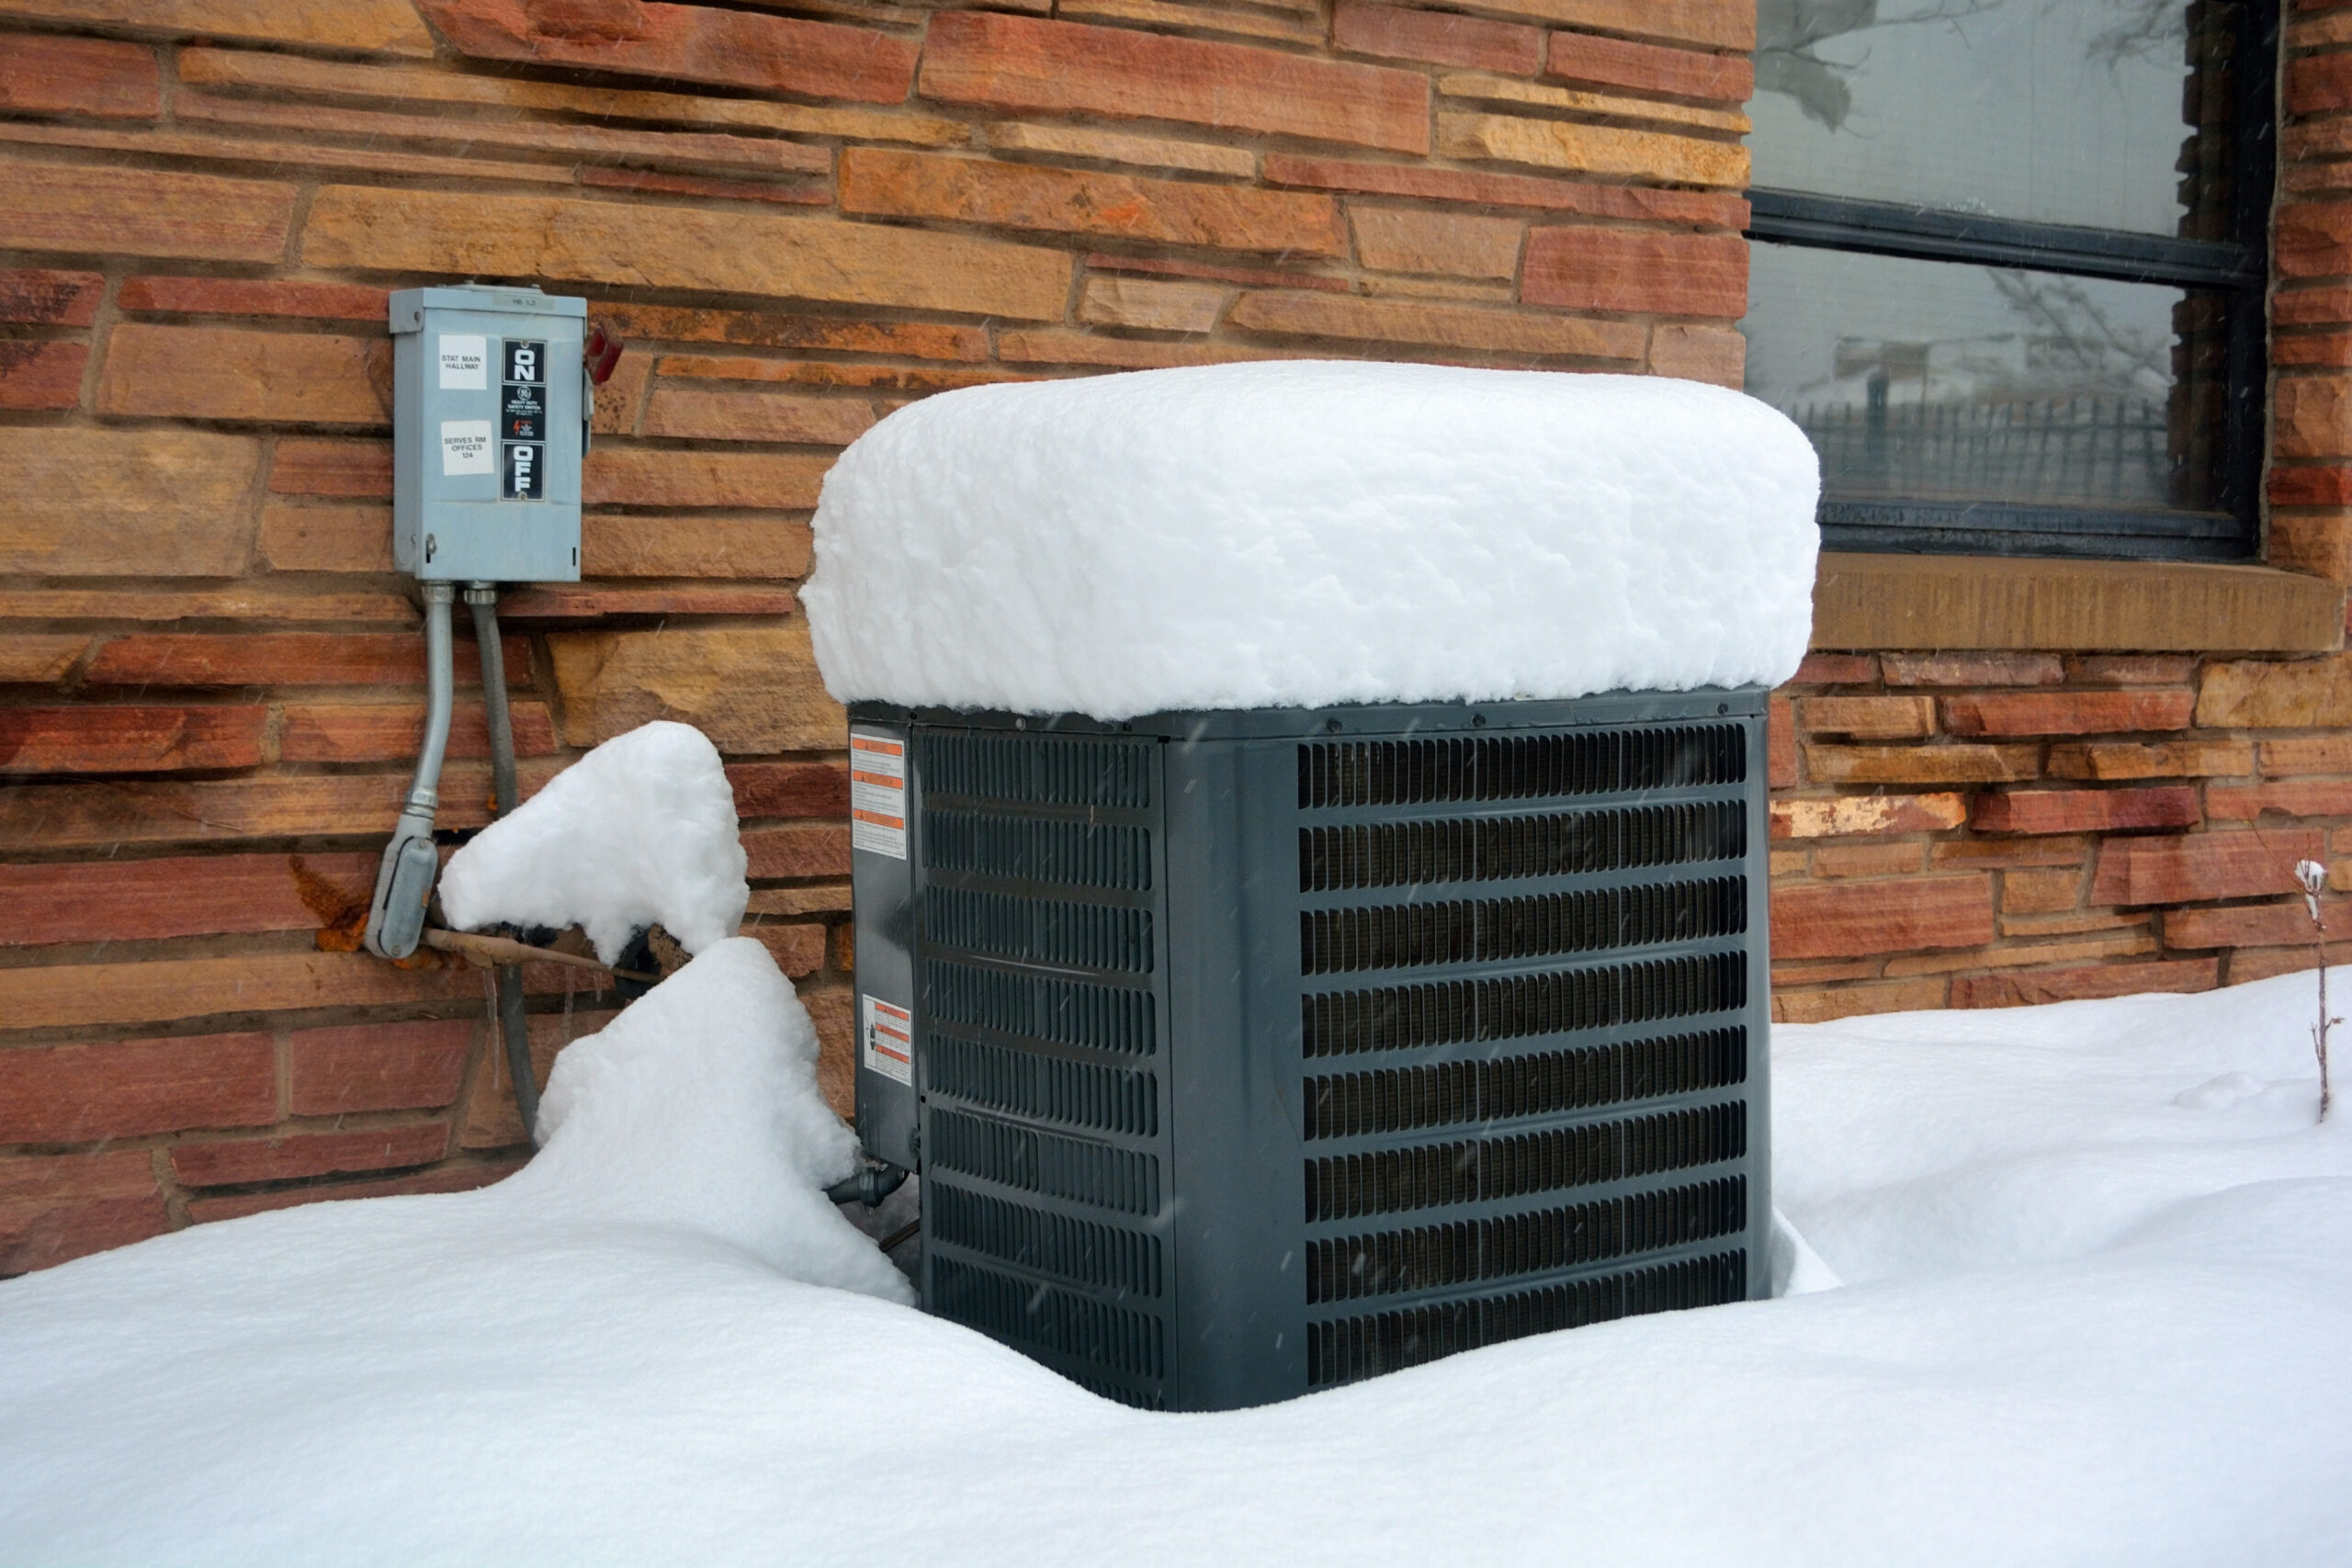 Může moje tepelné čerpadlo zahřát za opravdu chladného počasí?